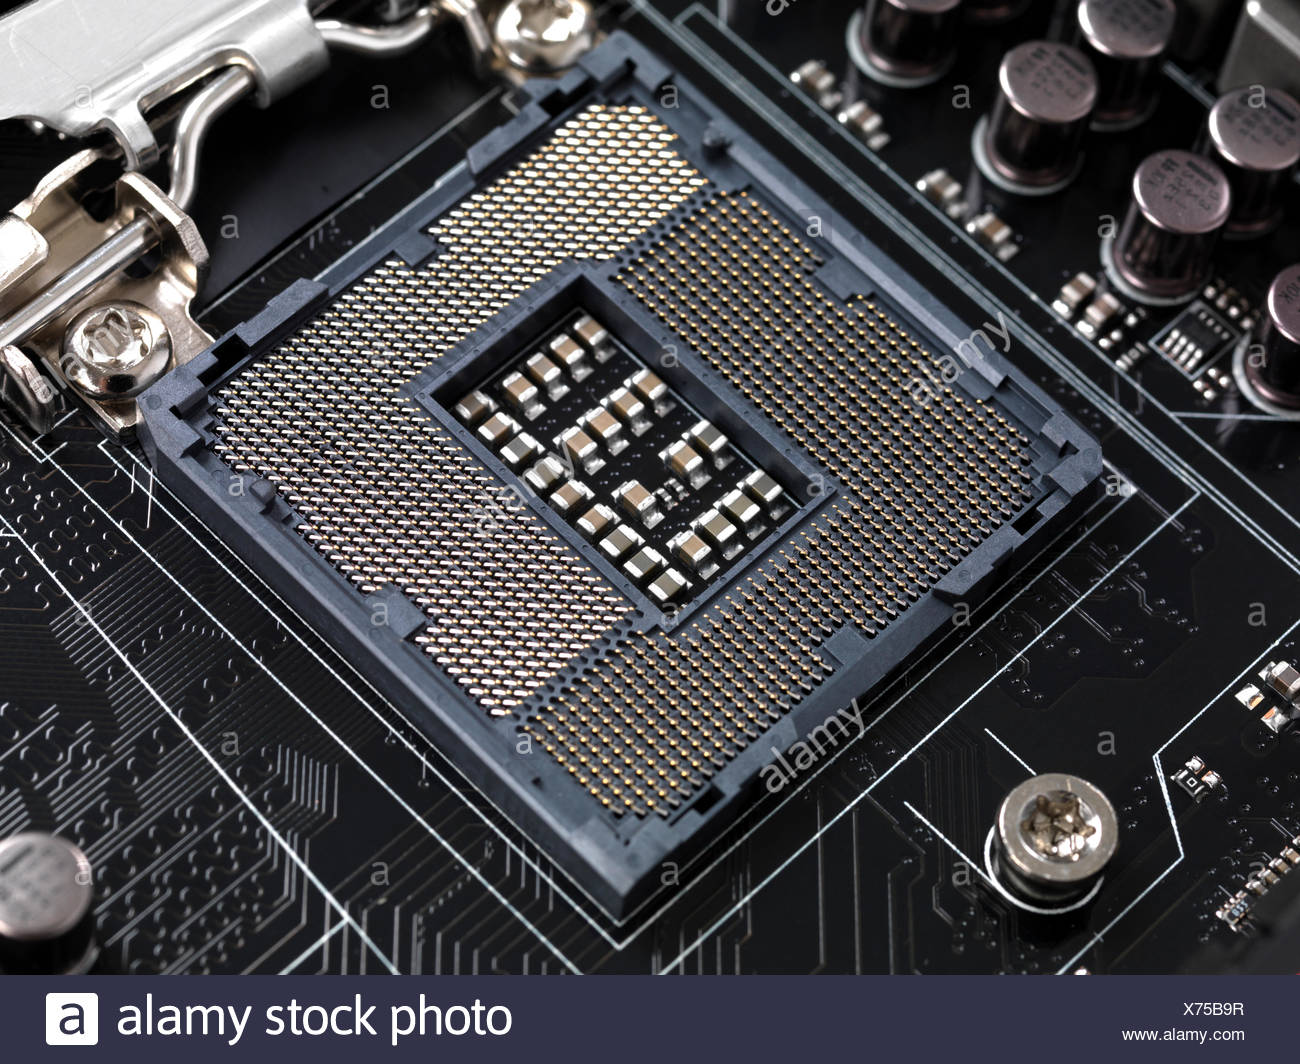 Computer motherboard CPU socket contacts Intel LGA 1155 Stock Photo